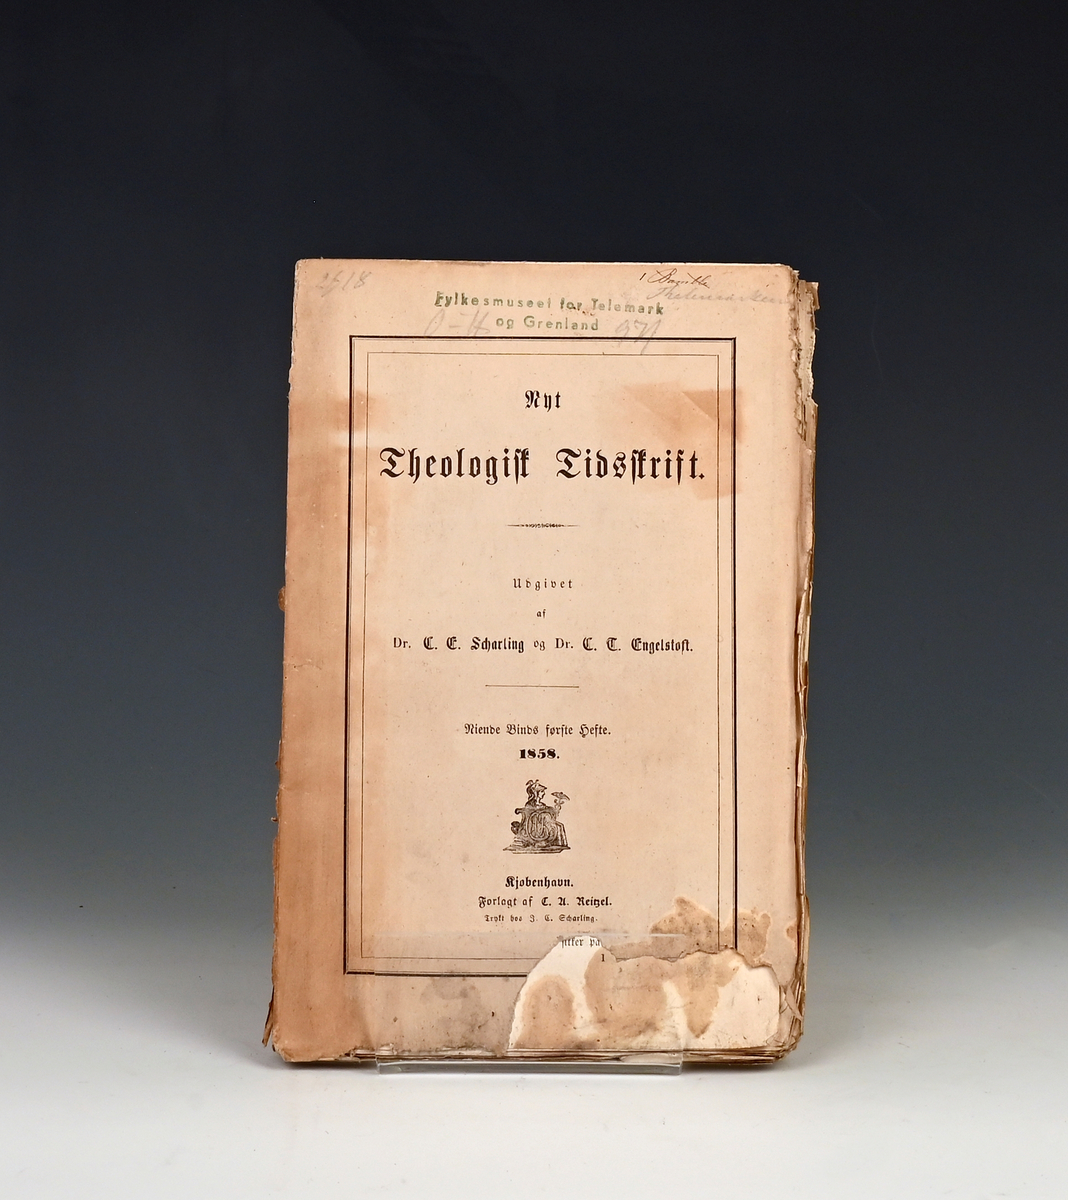 Nyt Theologisk Tidsskrift. Udg. af C. E. Scharling og C. T. Engelstofs. 
Niende Bind 1858